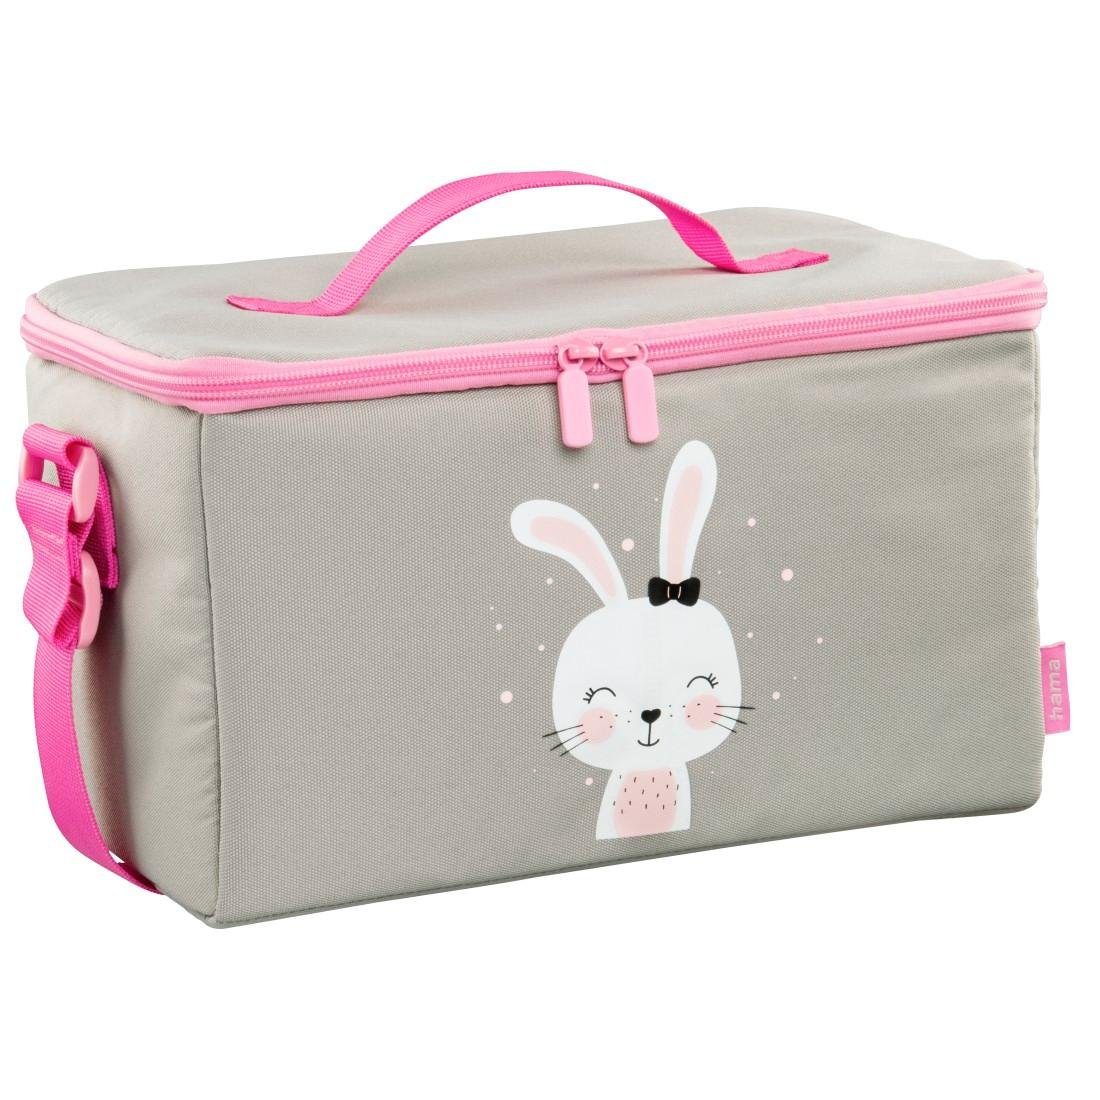 Toniebox®, und "Lovely Hama pink für Tonies® Bunny", Toniebox, Tigerbox Tasche Tragetasche Zubehör